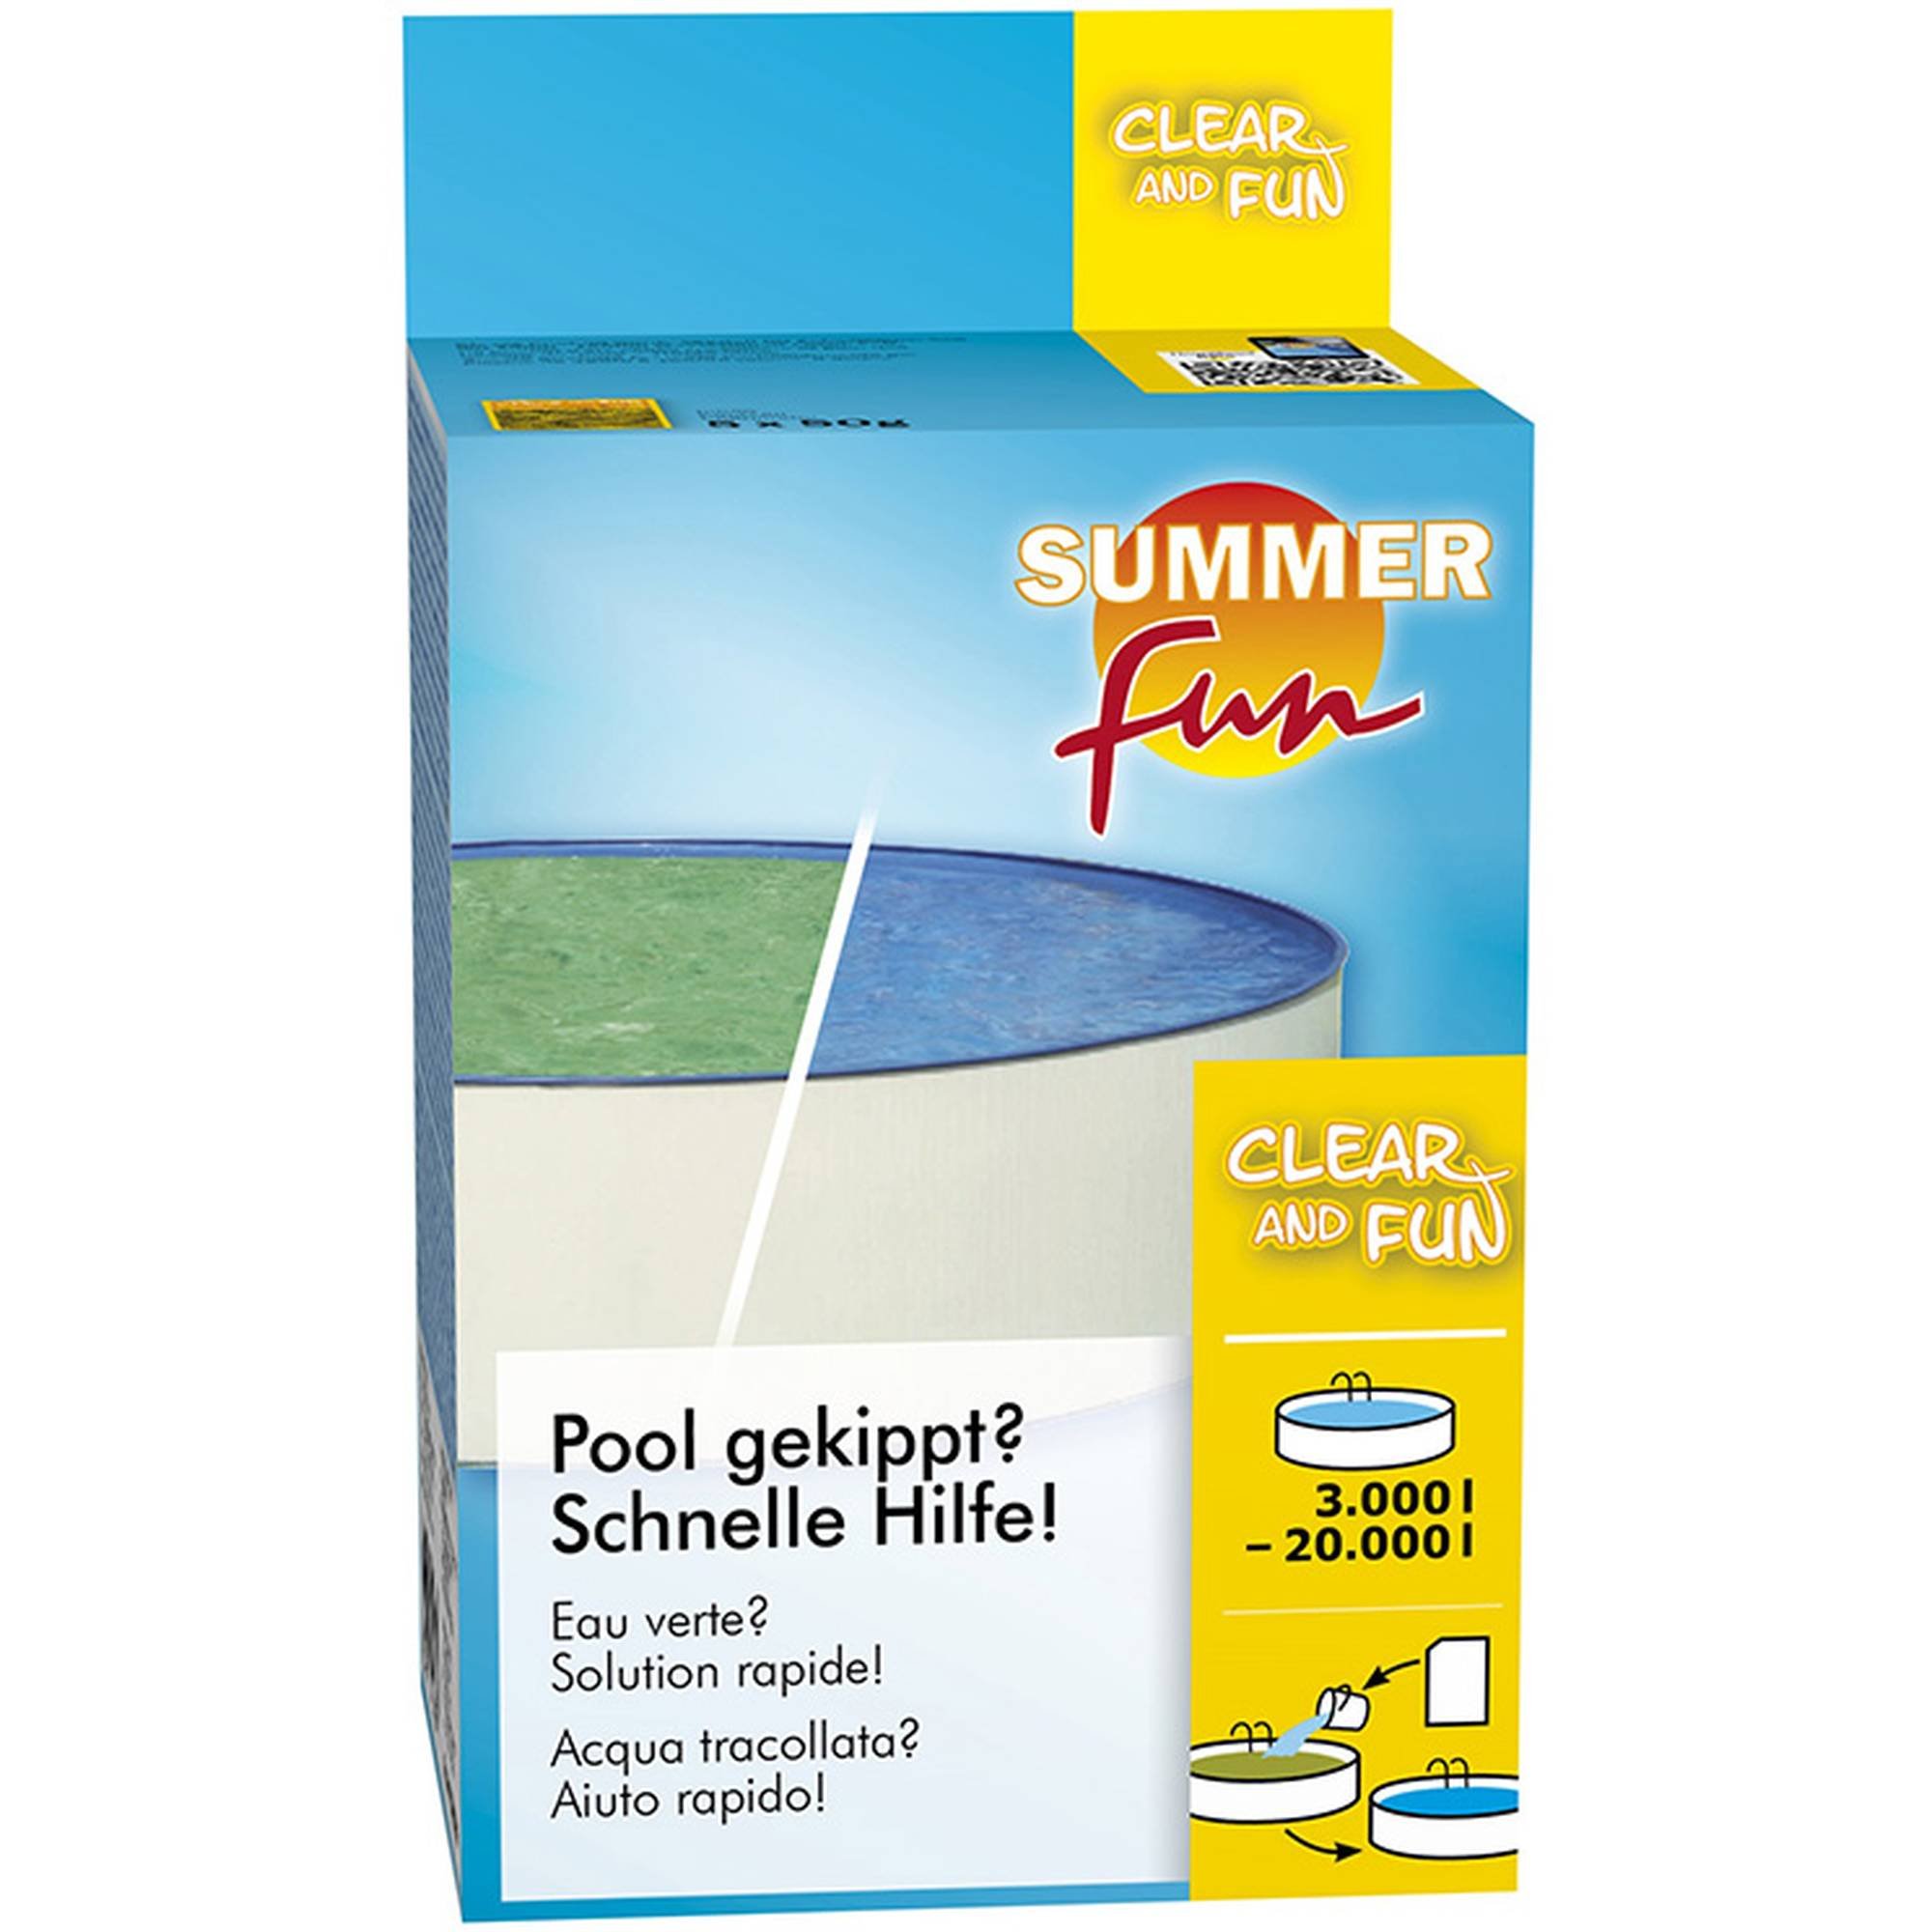 Summer Fun - Clear and Fun